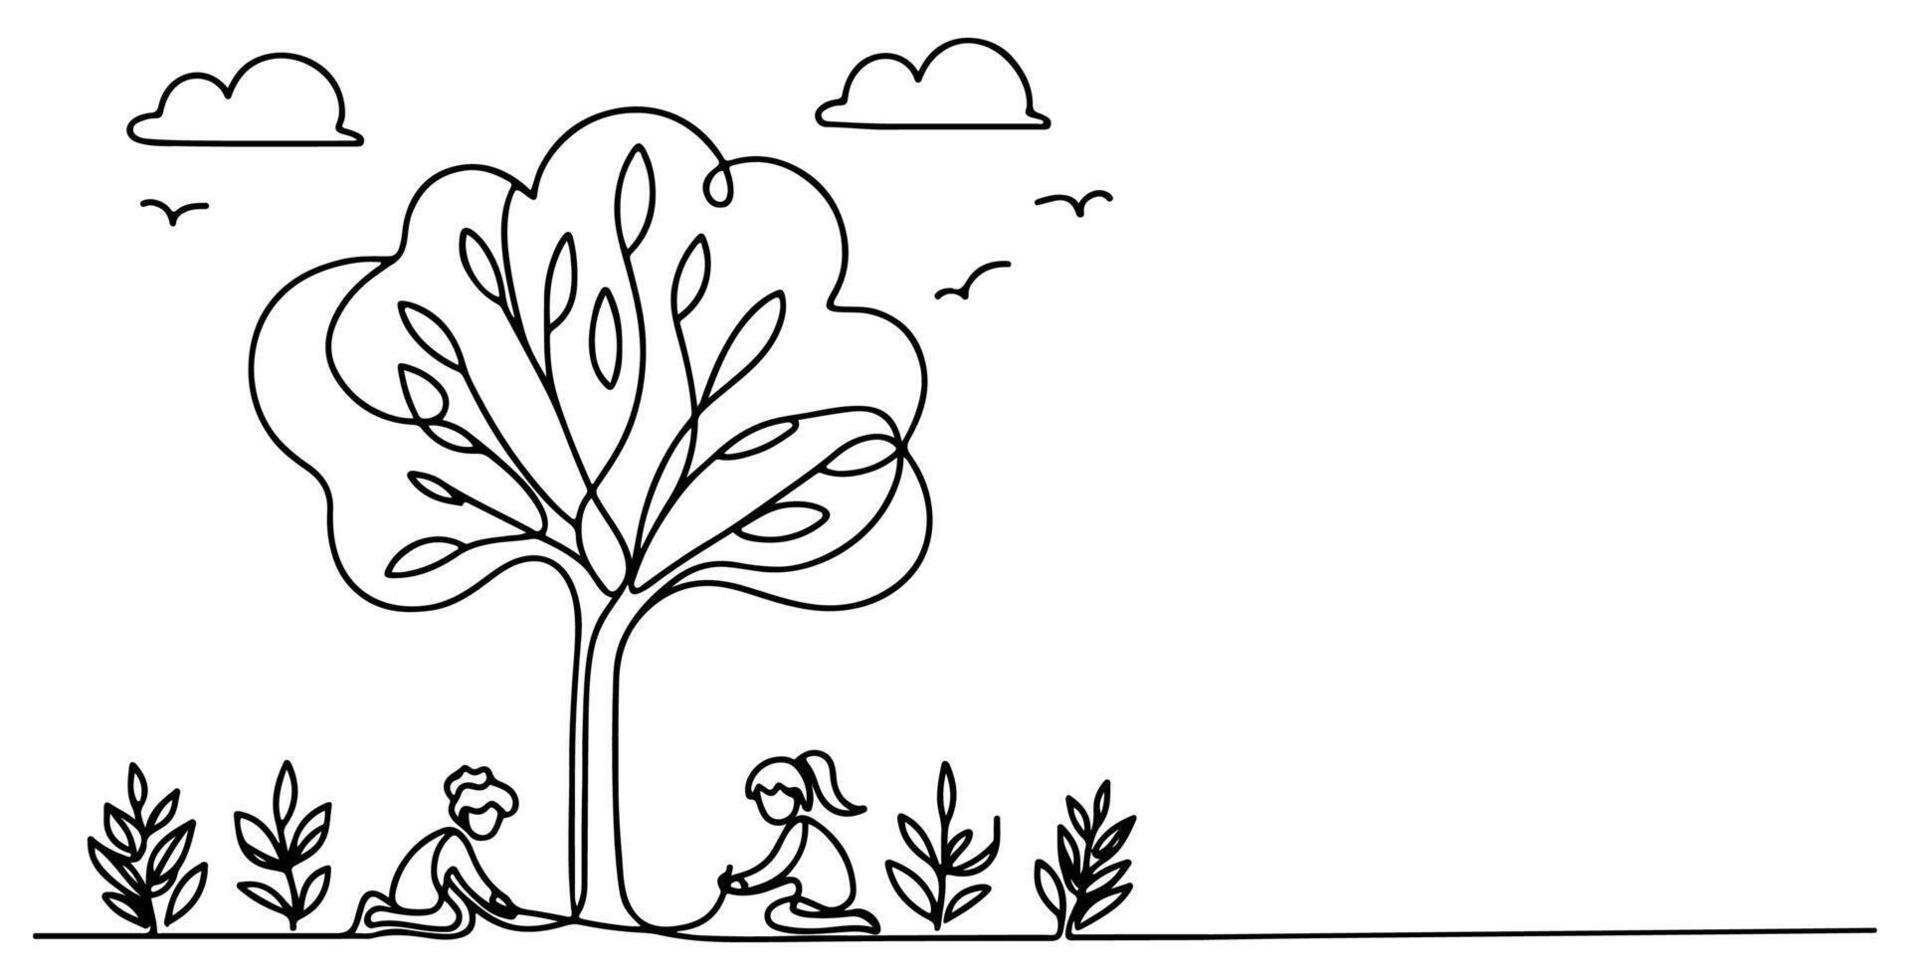 continu un noir ligne art dessin silhouette de les enfants plantation arbre. pelle creuse les racines plante dans sol à enregistrer le monde et Terre journée réduire global chauffage croissance vecteur